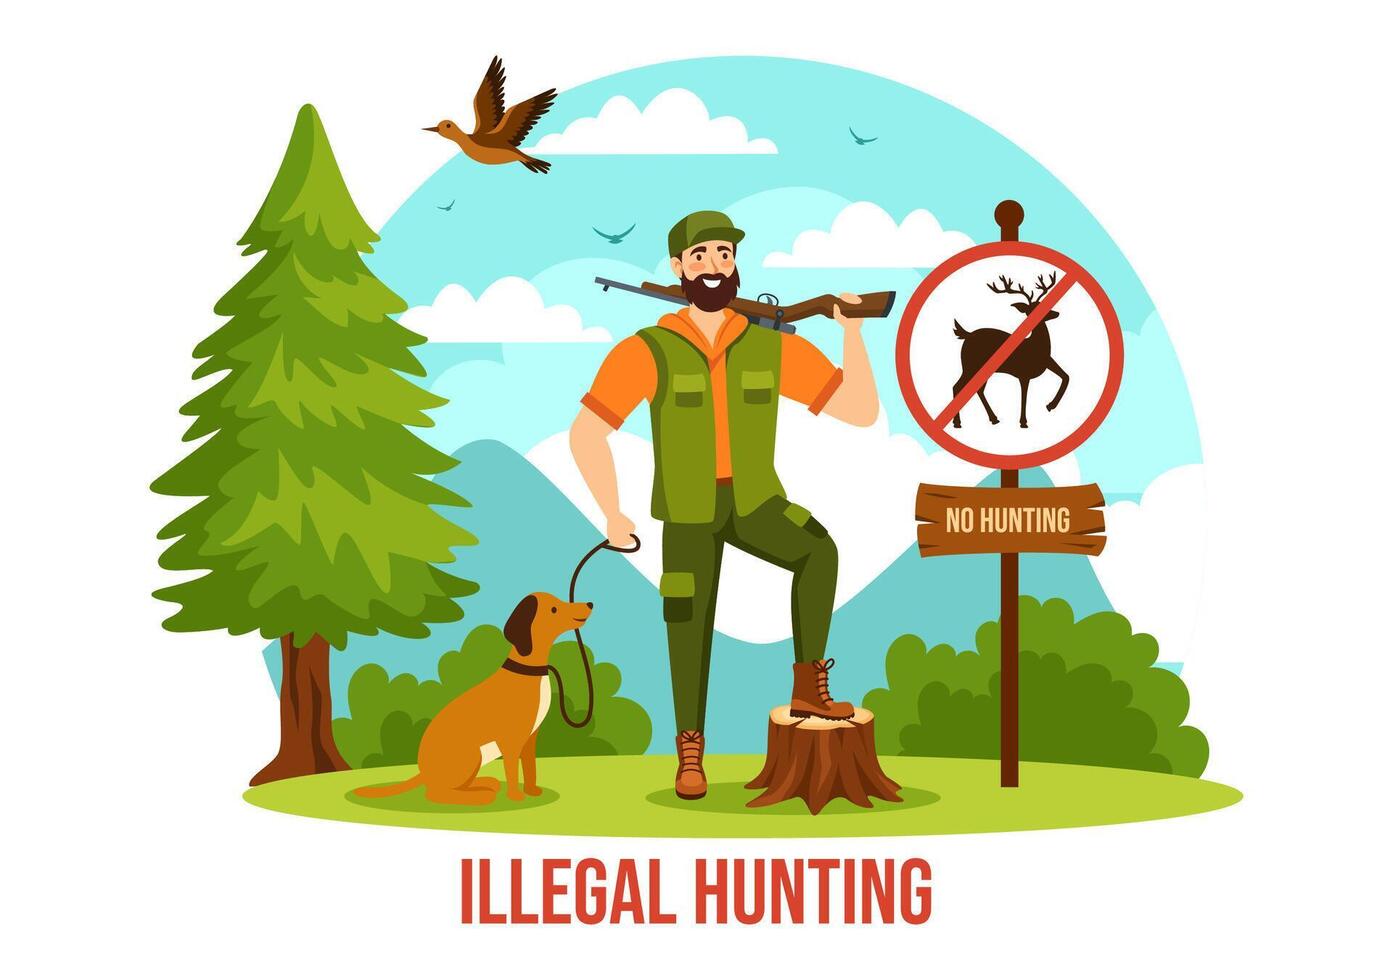 olaglig jakt vektor illustration förbi skytte, tar vild djur och växter till sälja i platt tecknad serie bakgrund design